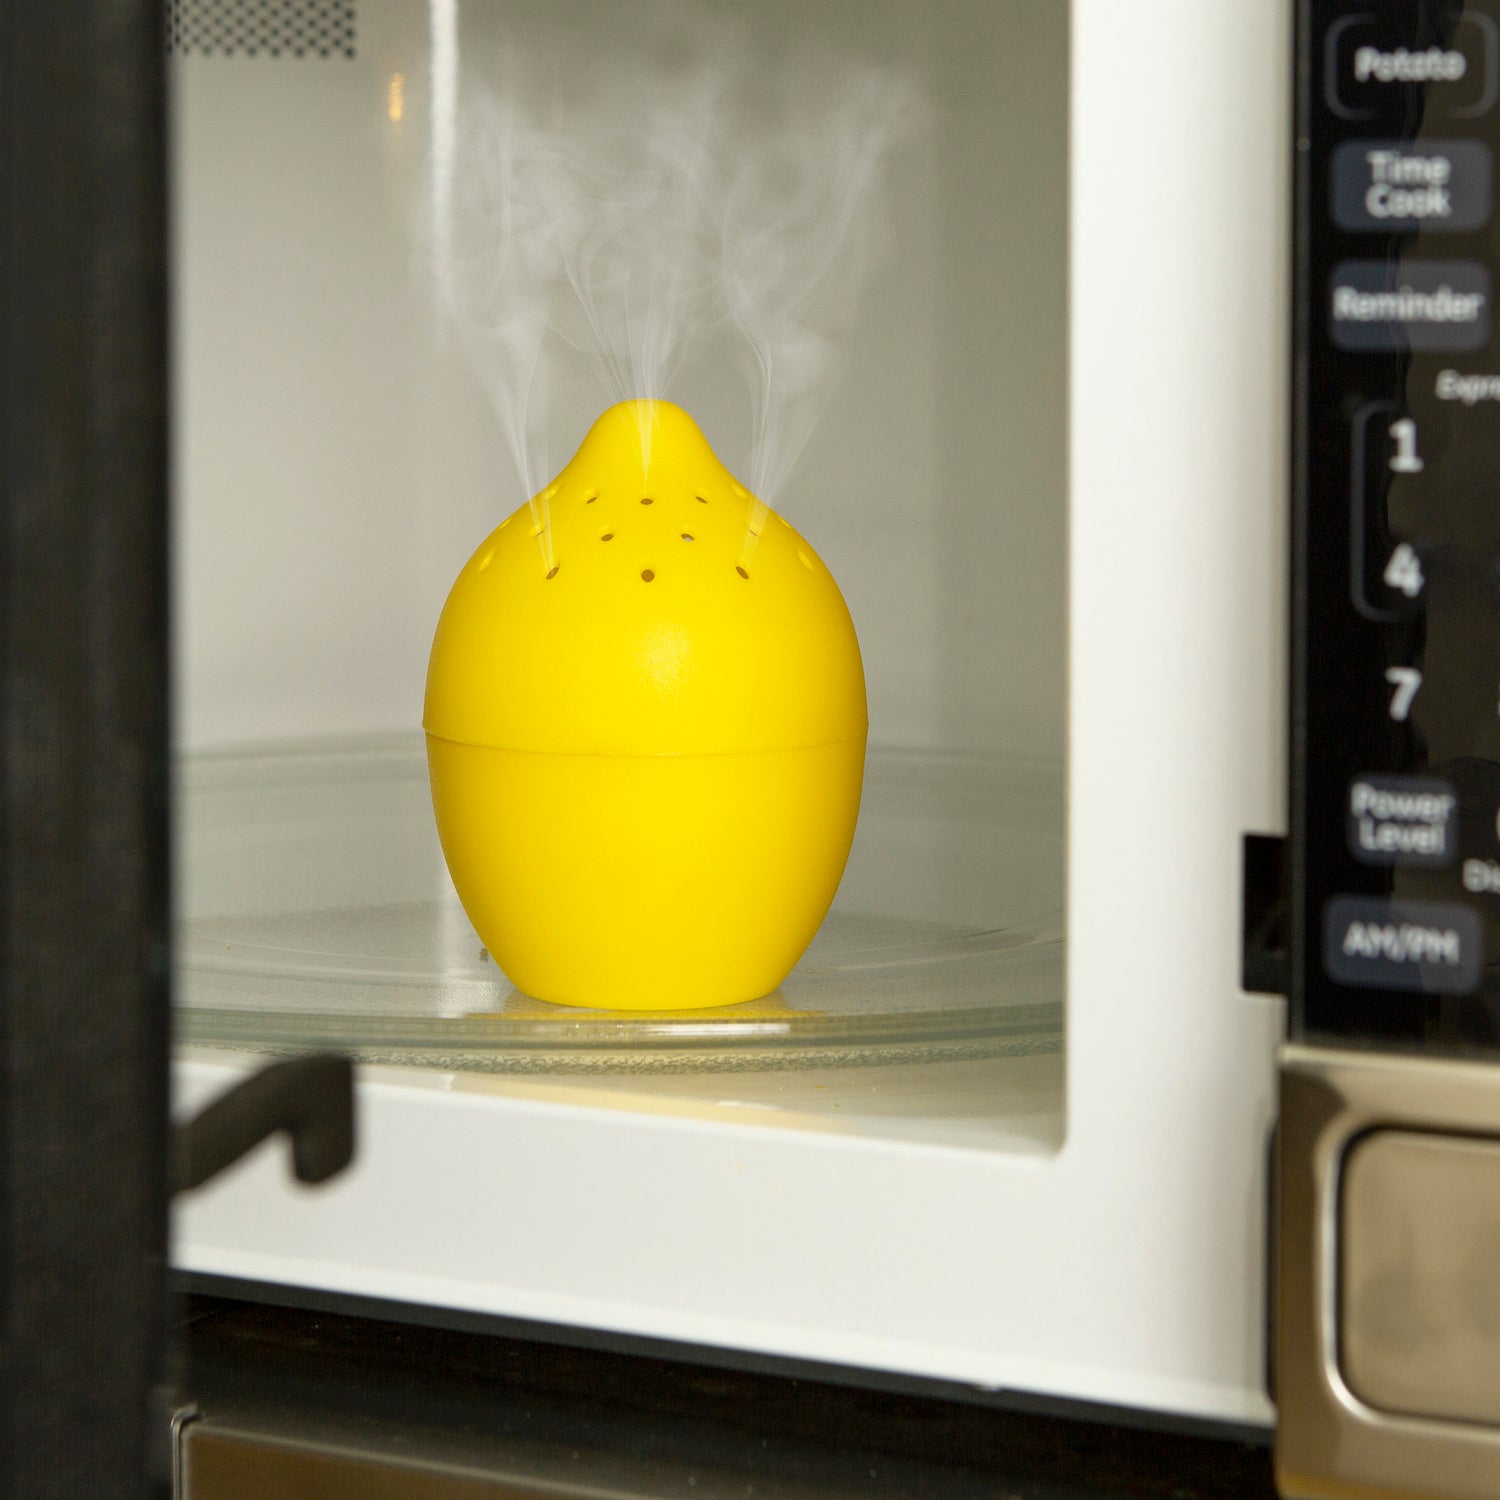 Kikkerland Lemon Microwave Cleaner CU362